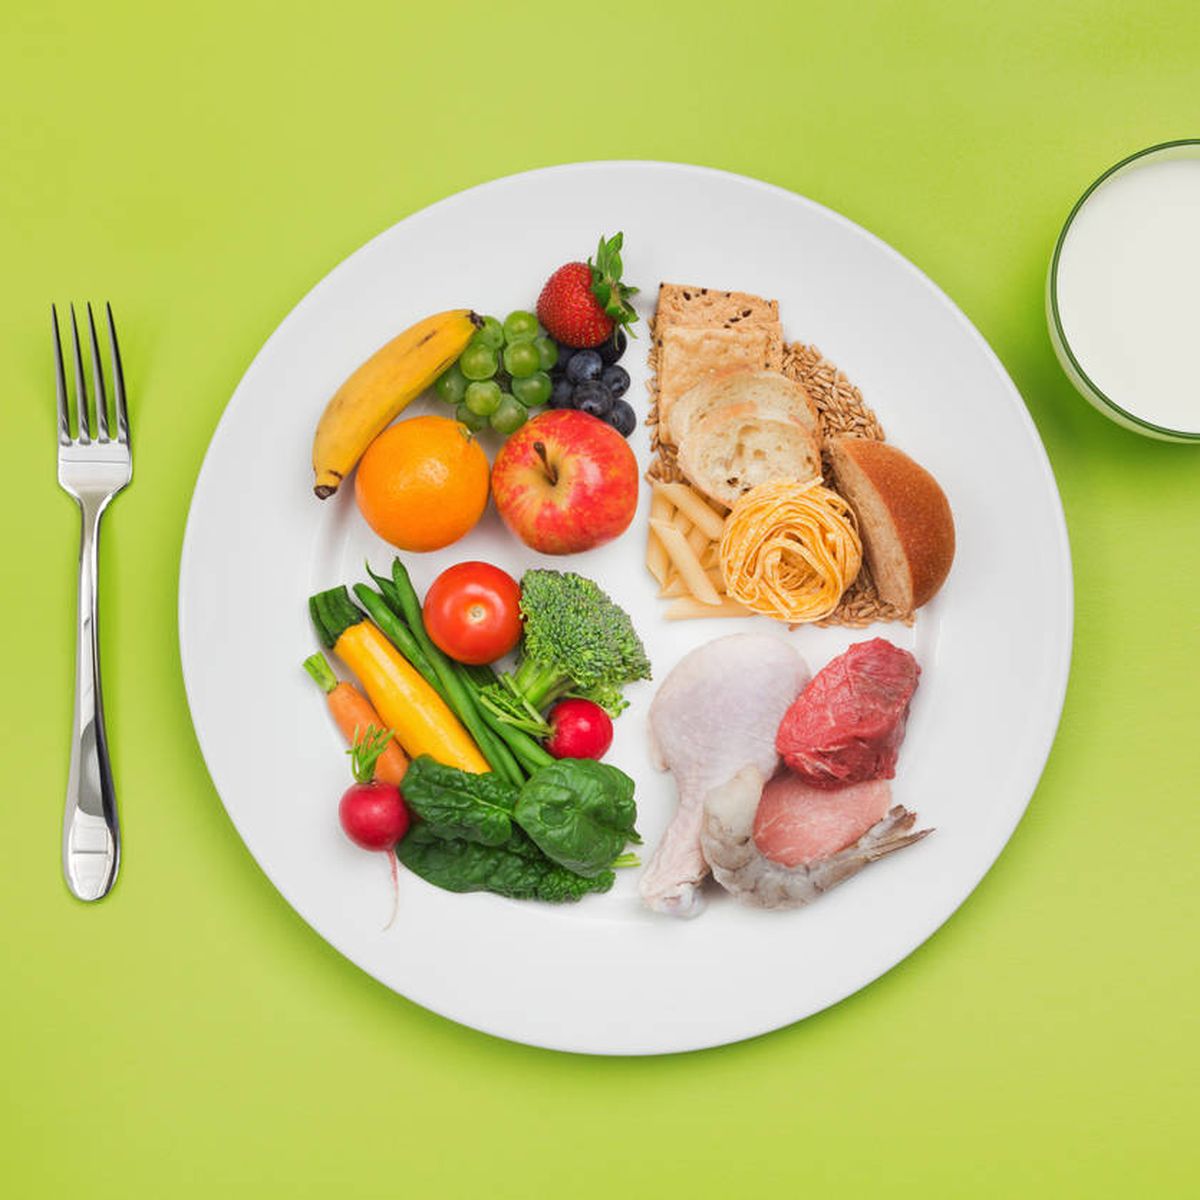 Cómo armar un plato saludable? – Edenred Blog